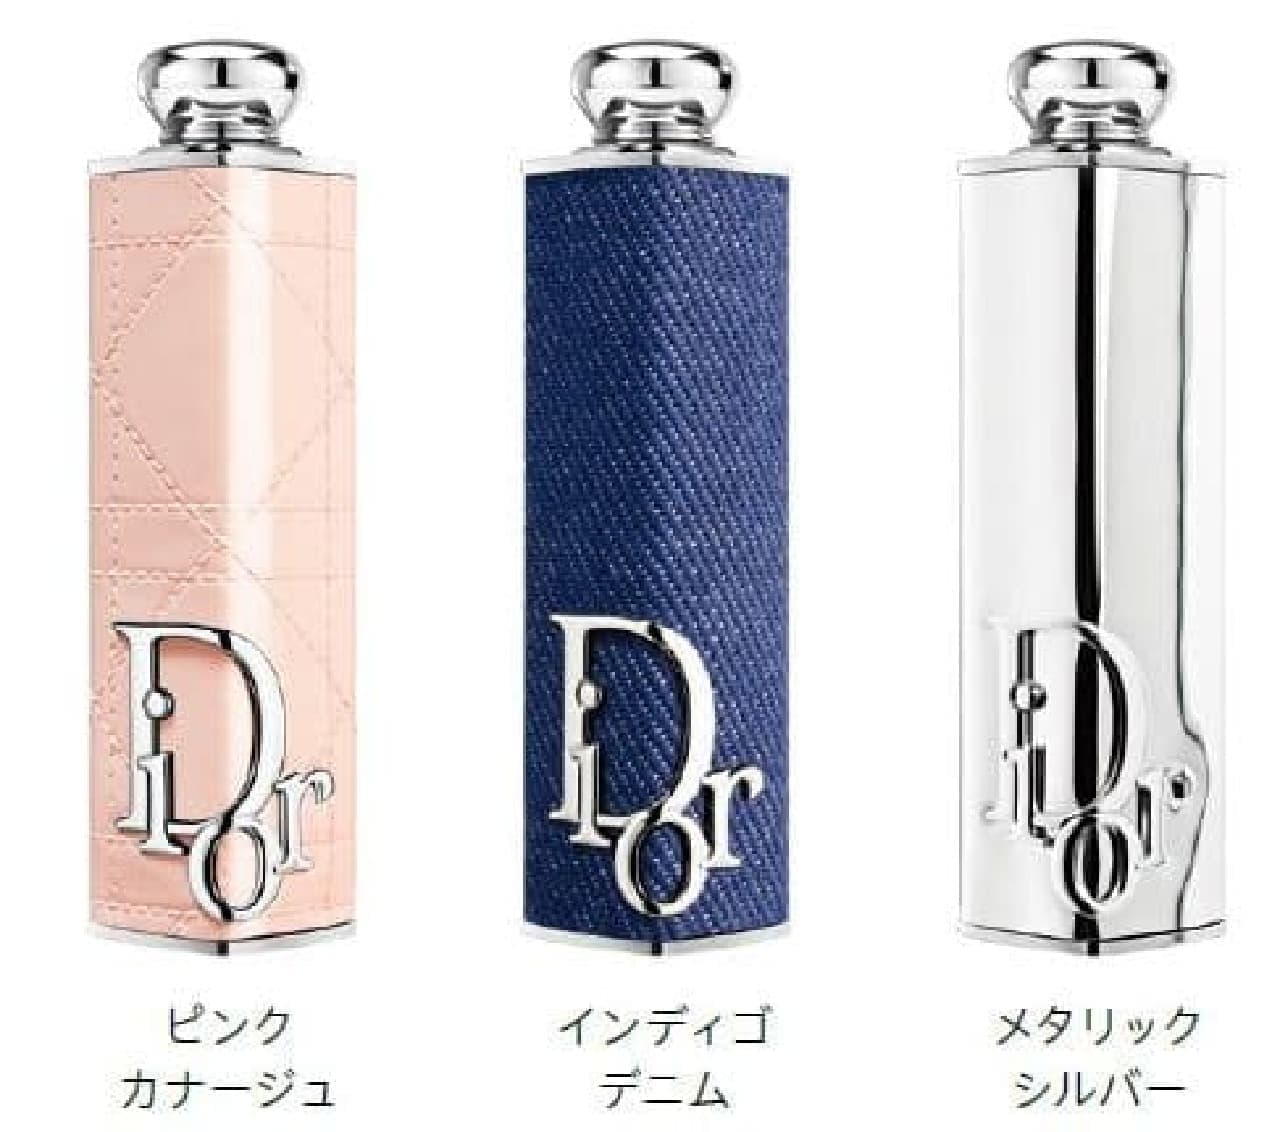 Dior "Couture Lipstick Case